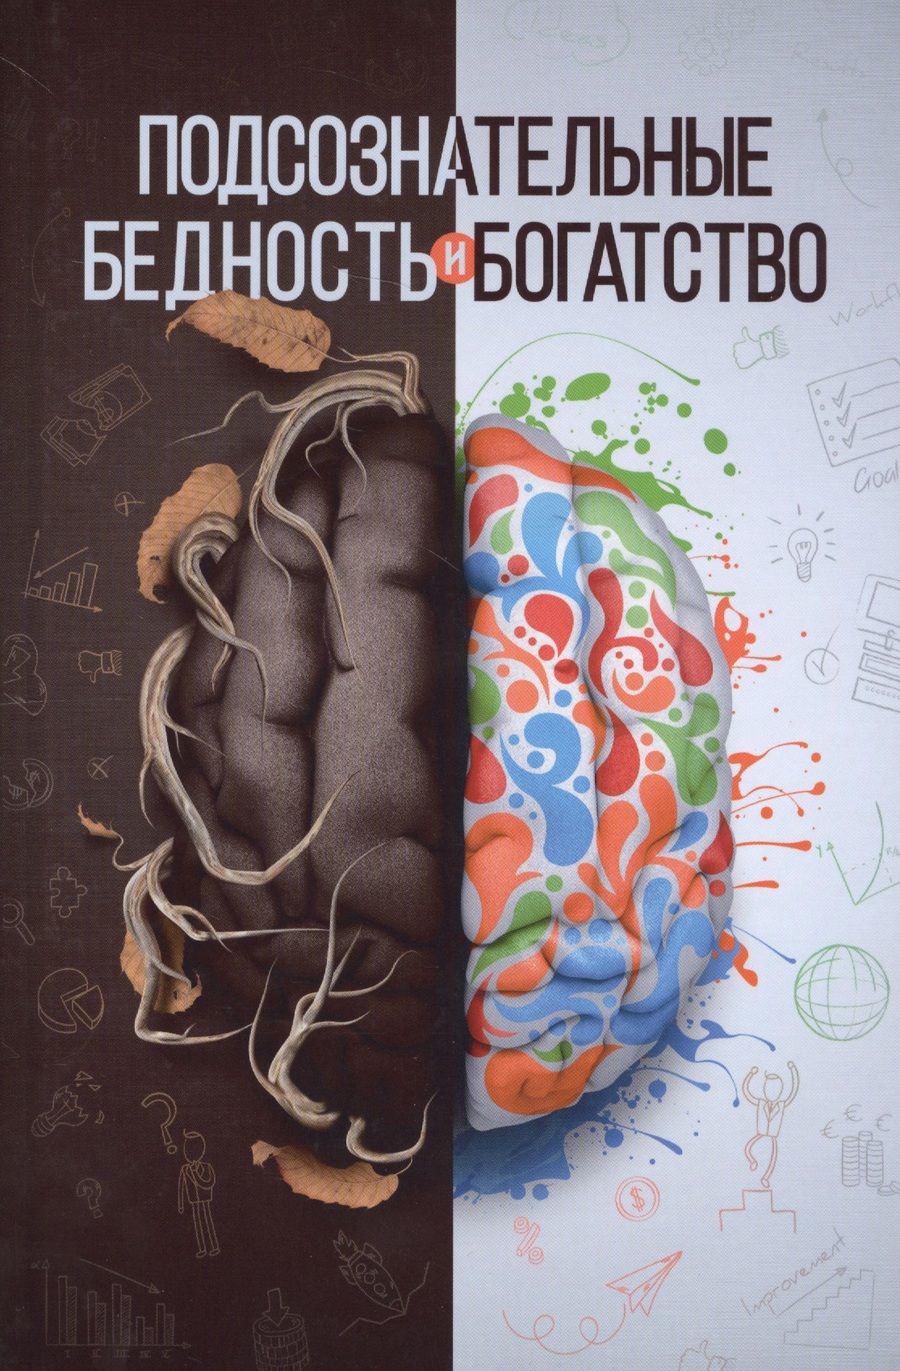 Обложка книги "Шамиль Аляутдинов: Подсознательные бедность и богатство (Аляутдинов)"